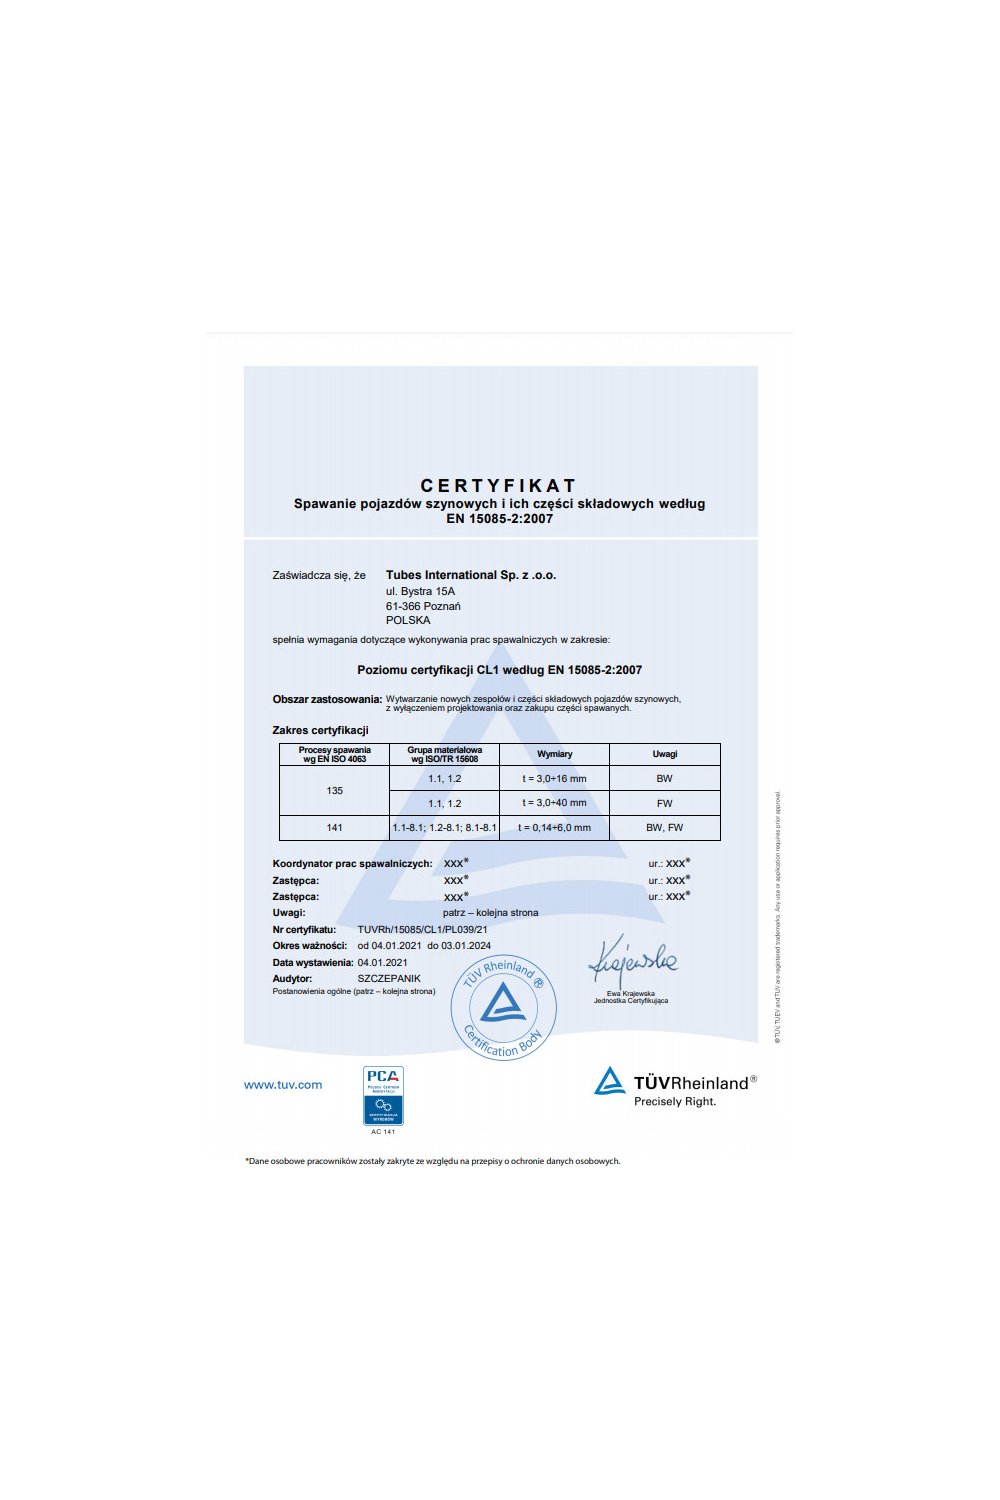 Certyfikat - Spawanie pojazdów szynowych i ich części składowych według EN 15085-2:2007 - zdjęcie